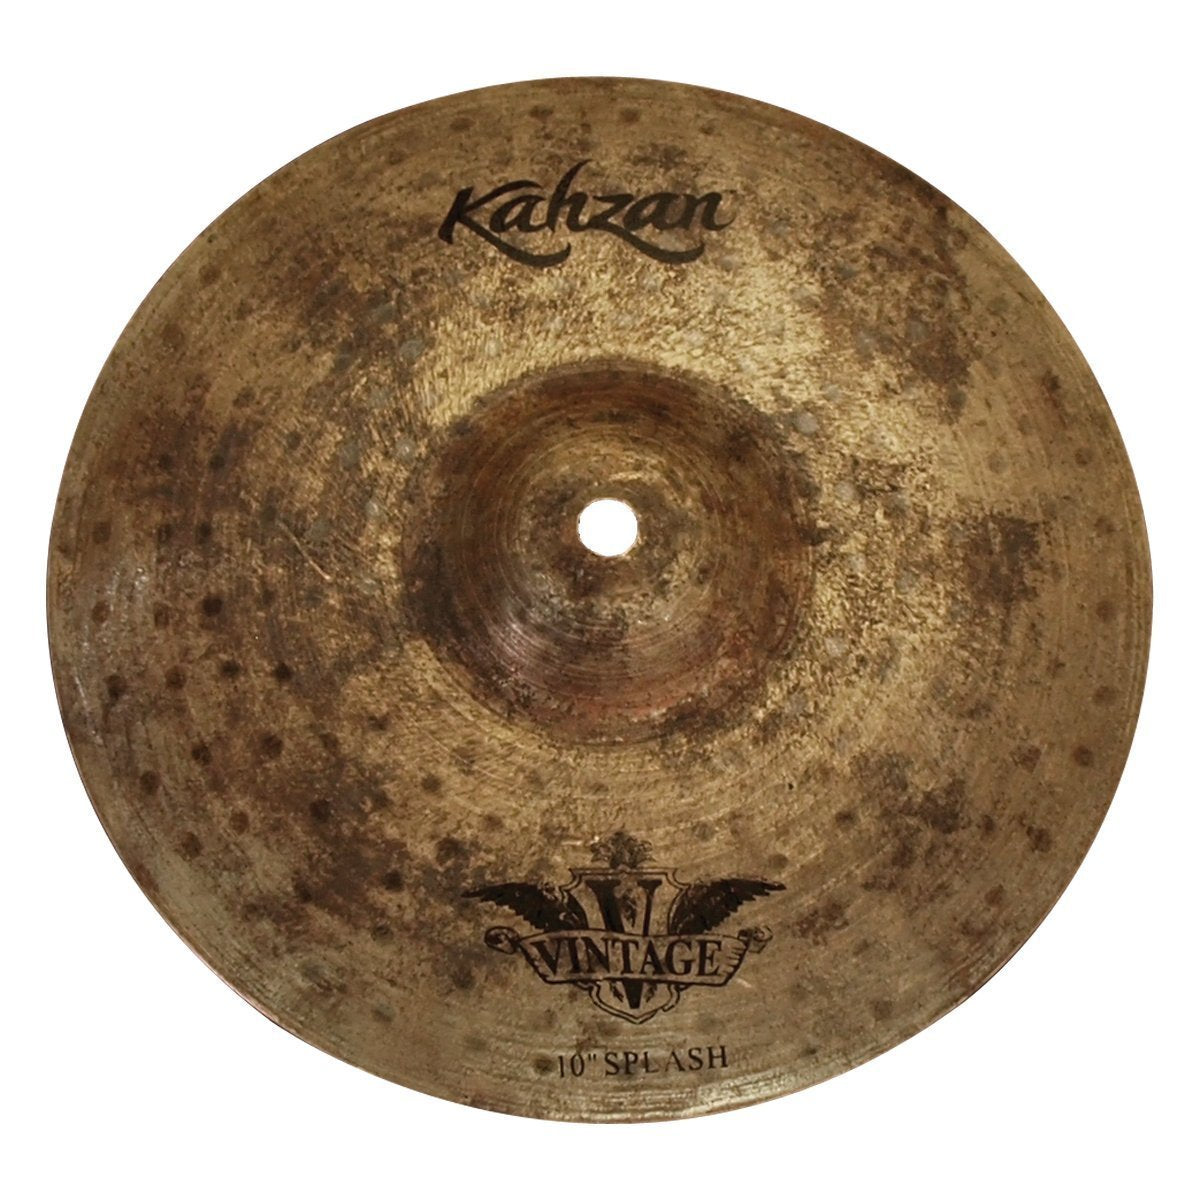 Kahzan 'Vintage Series' Splash Cymbal (10")